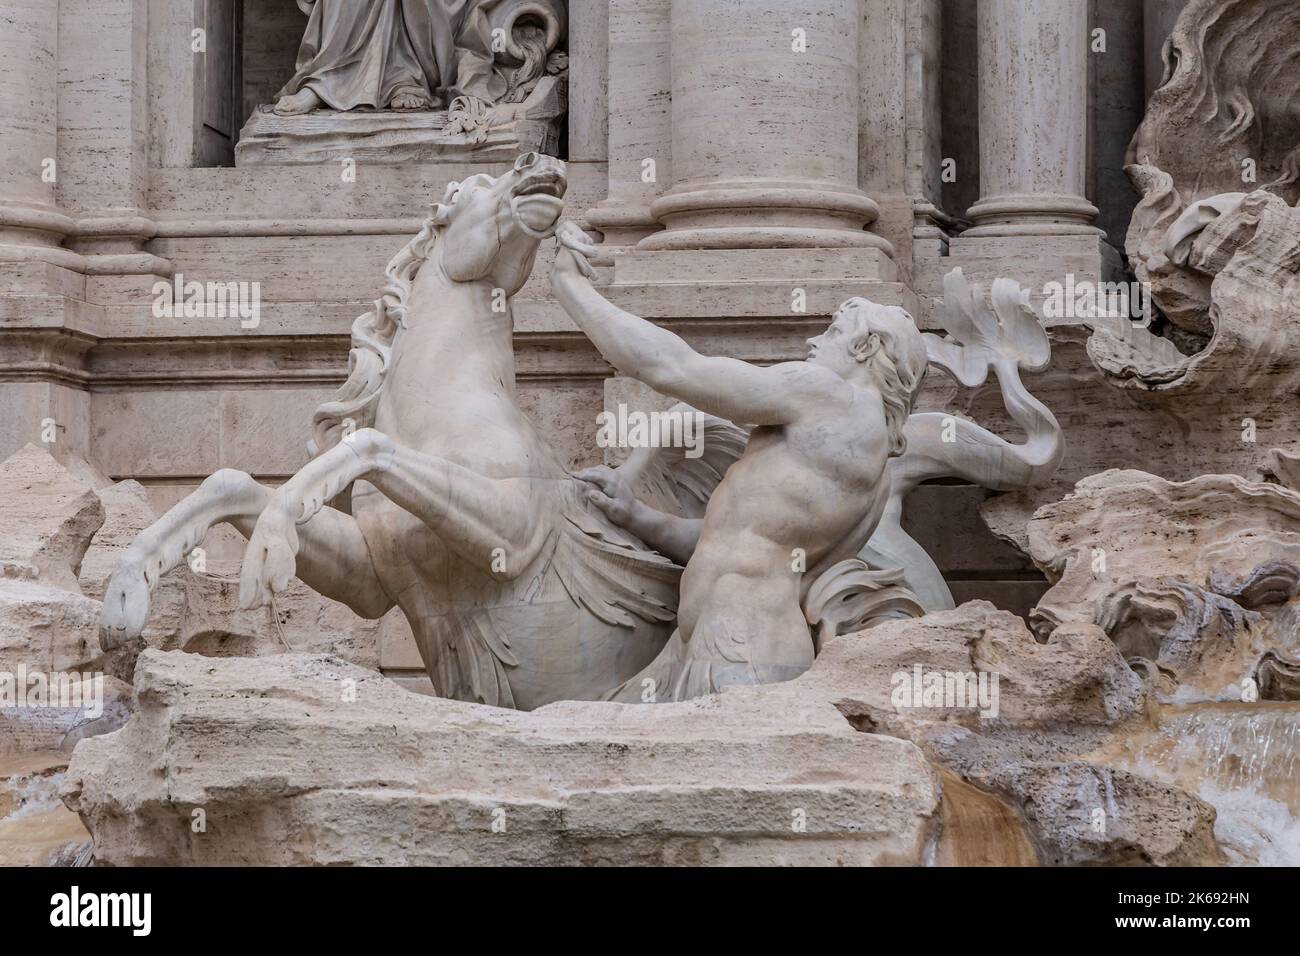 ROME, ITALIE - 02 DÉCEMBRE 2019 : statues à la fontaine de Trevi (Fontana di Trevi) à Rome, Italie Banque D'Images